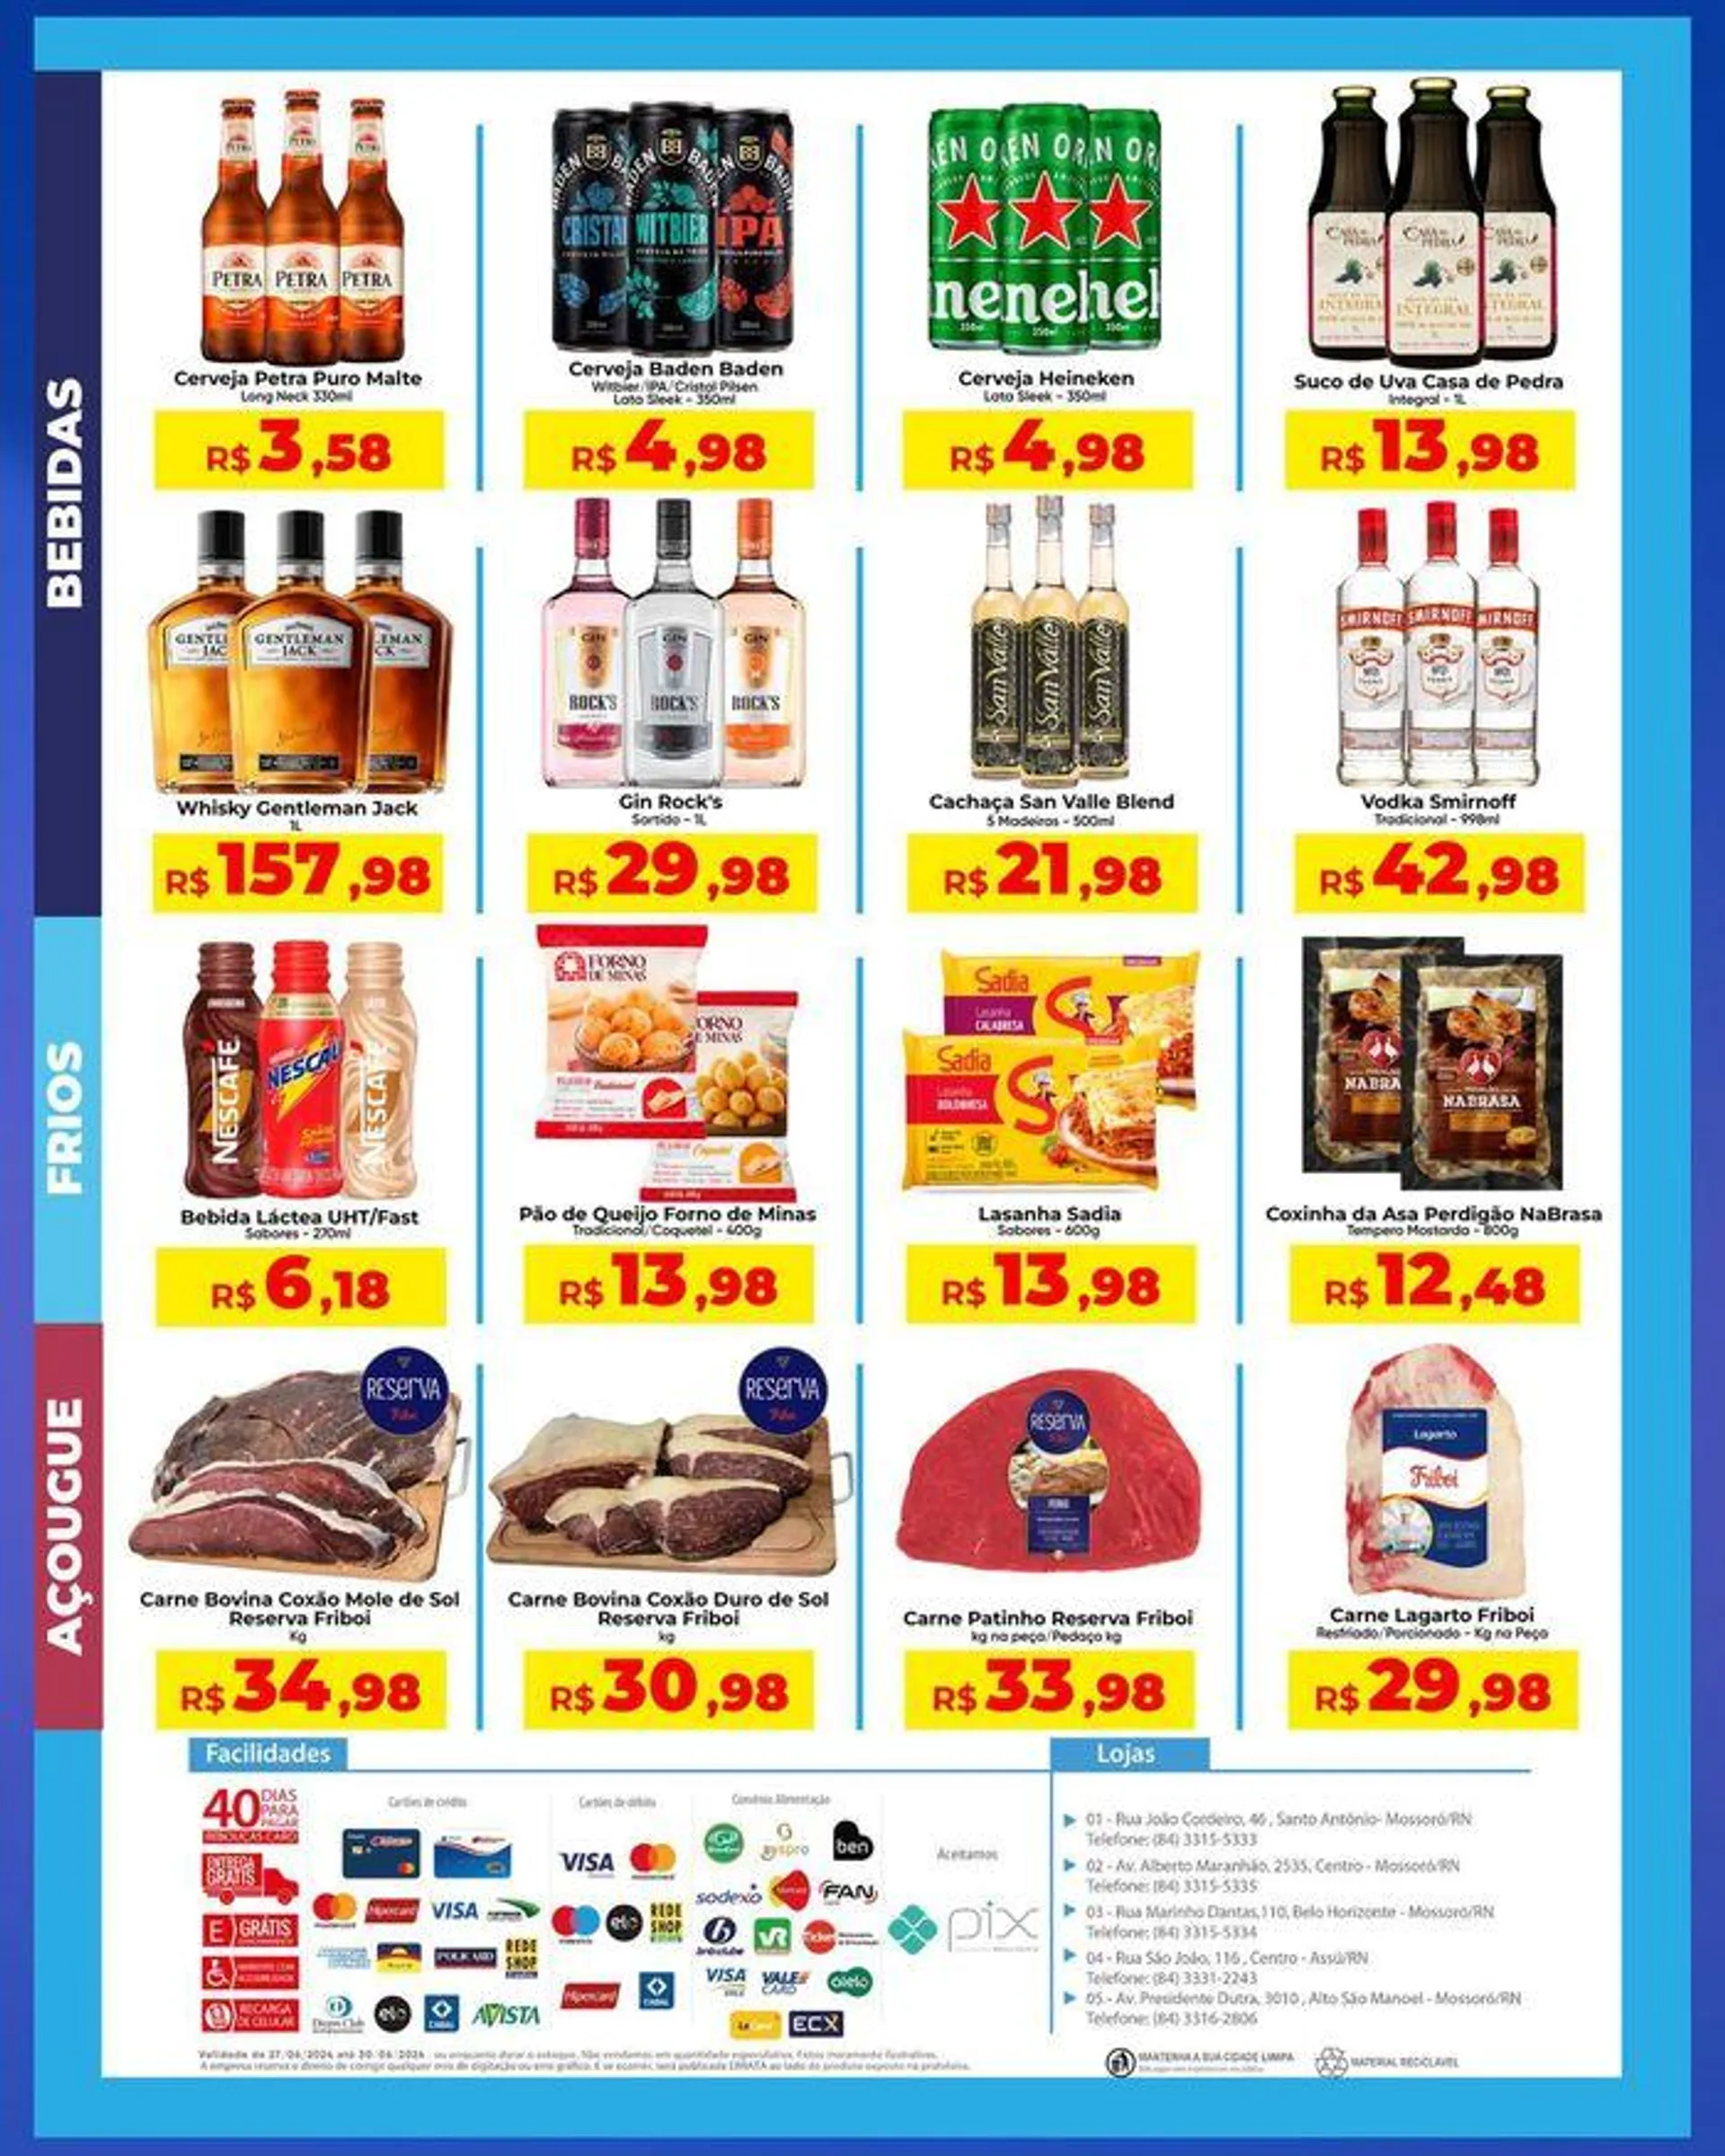 Oferta Rebouças Supermercados - 1